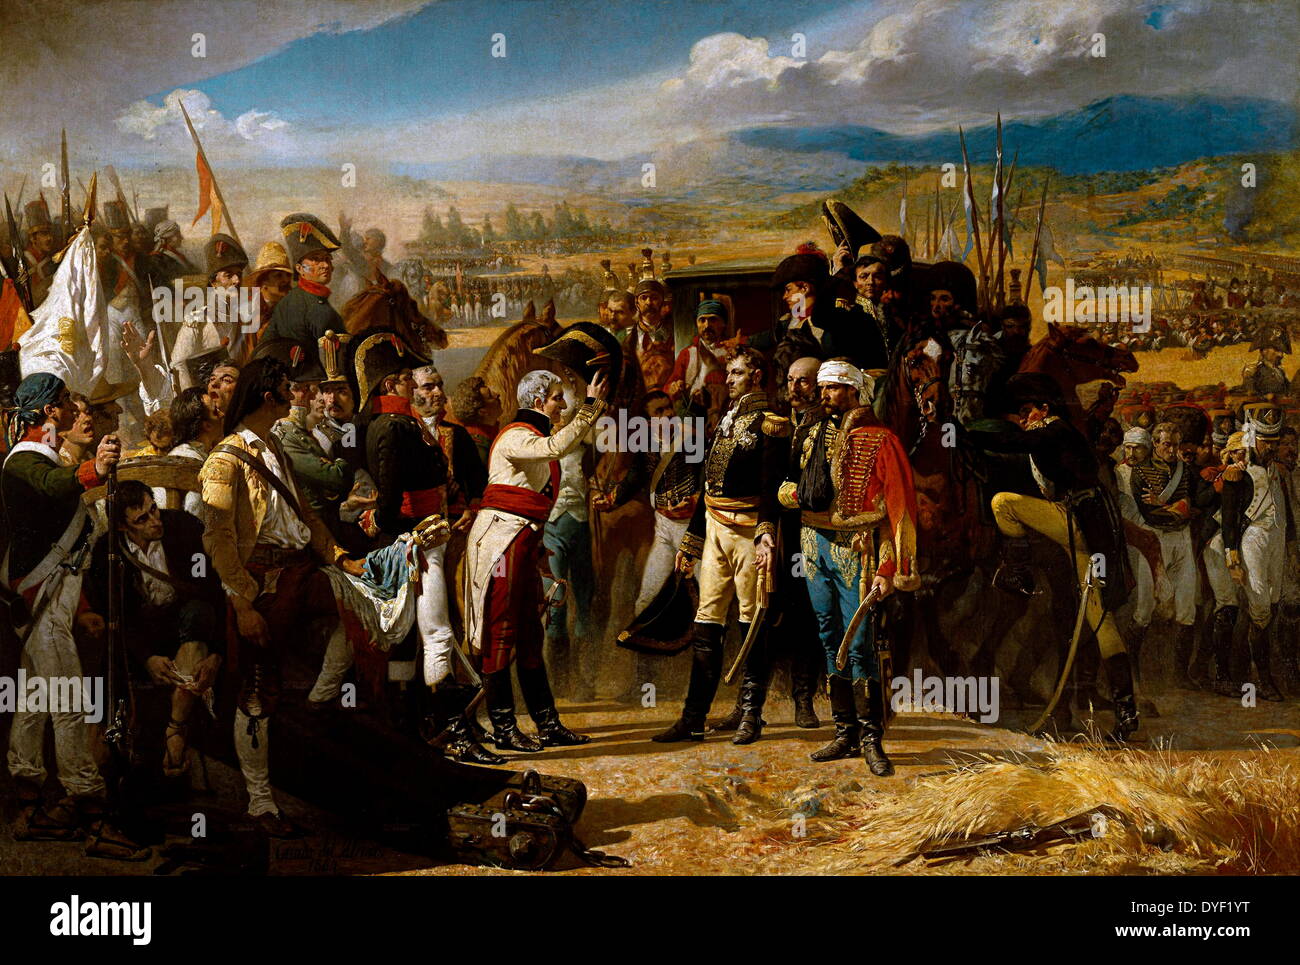 Schlacht von bailén oder "die Kapitulation bei Bailén' von José Casado del Alisal. Circa 1864, Öl auf Leinwand. Zeigt die Spanische Armee von Andalusien Sitzung II Corps der Kaiserlichen der französischen Armee d'Observation de la Gironde, die gezwungen waren, während der Krieg der Halbinsel im Jahr 1808 herauszugeben. Stockfoto